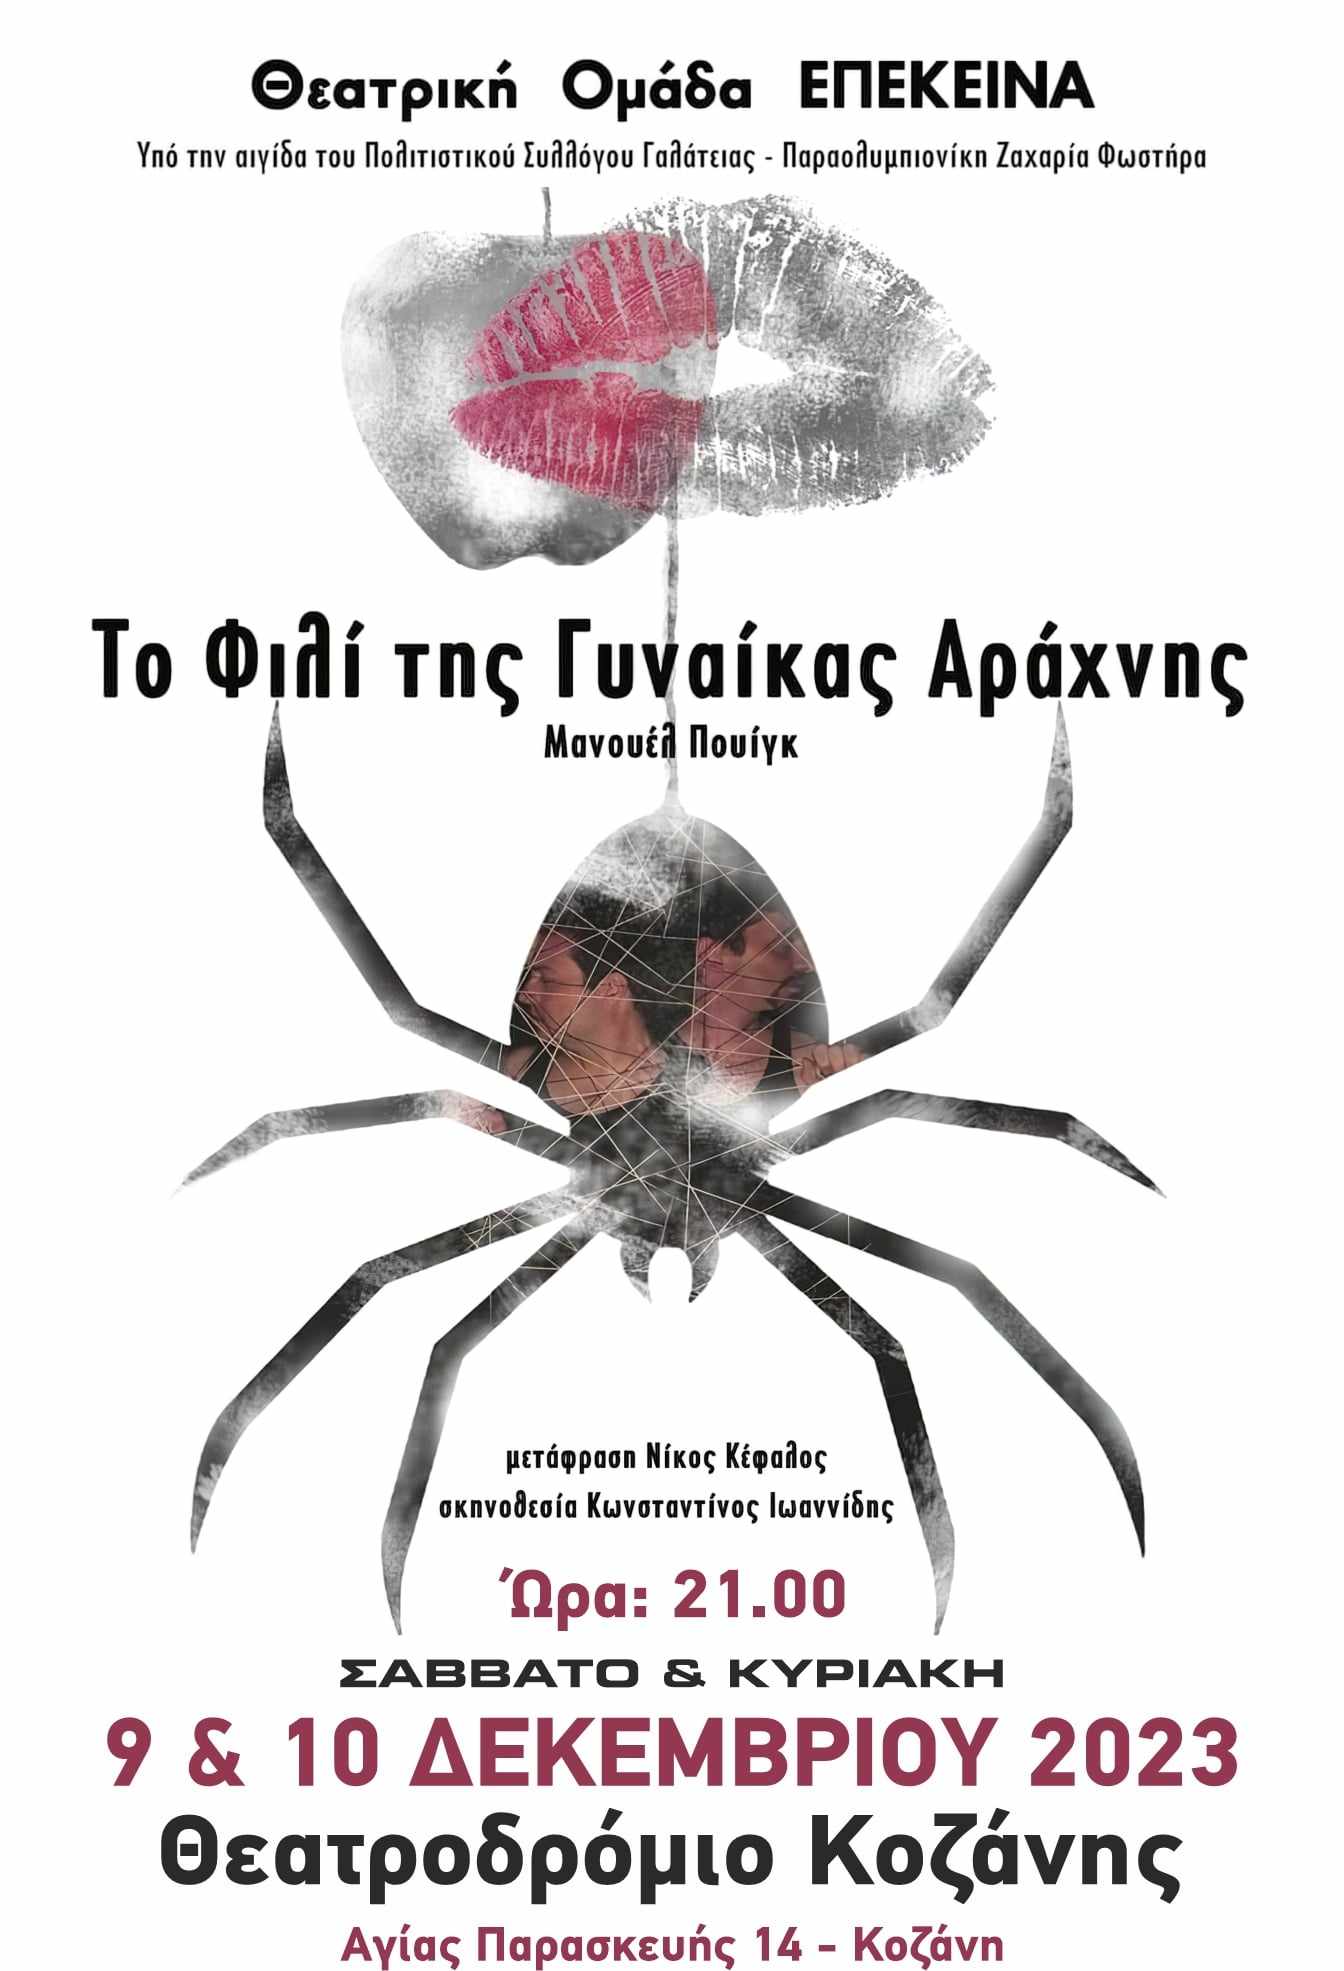 Θεατρική Ομάδα Επέκεινα: Παράσταση "Το Φιλί της Γυναίκας Αράχνης"